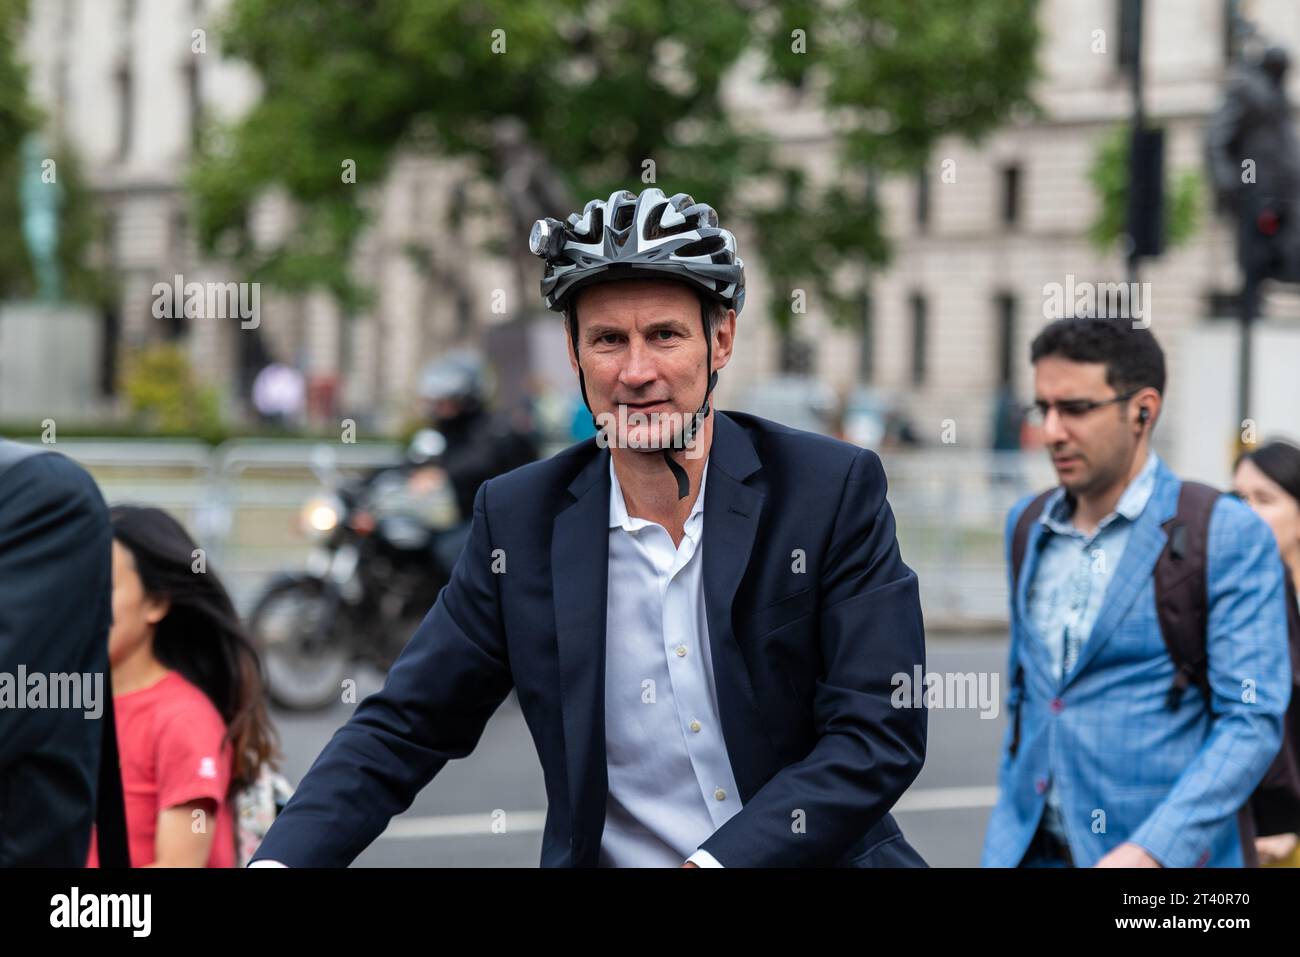 Jeremy Hunt député, député conservateur, arrivant au Parlement à vélo alors que le gouvernement reprenait après les vacances d'été, 2019 Banque D'Images